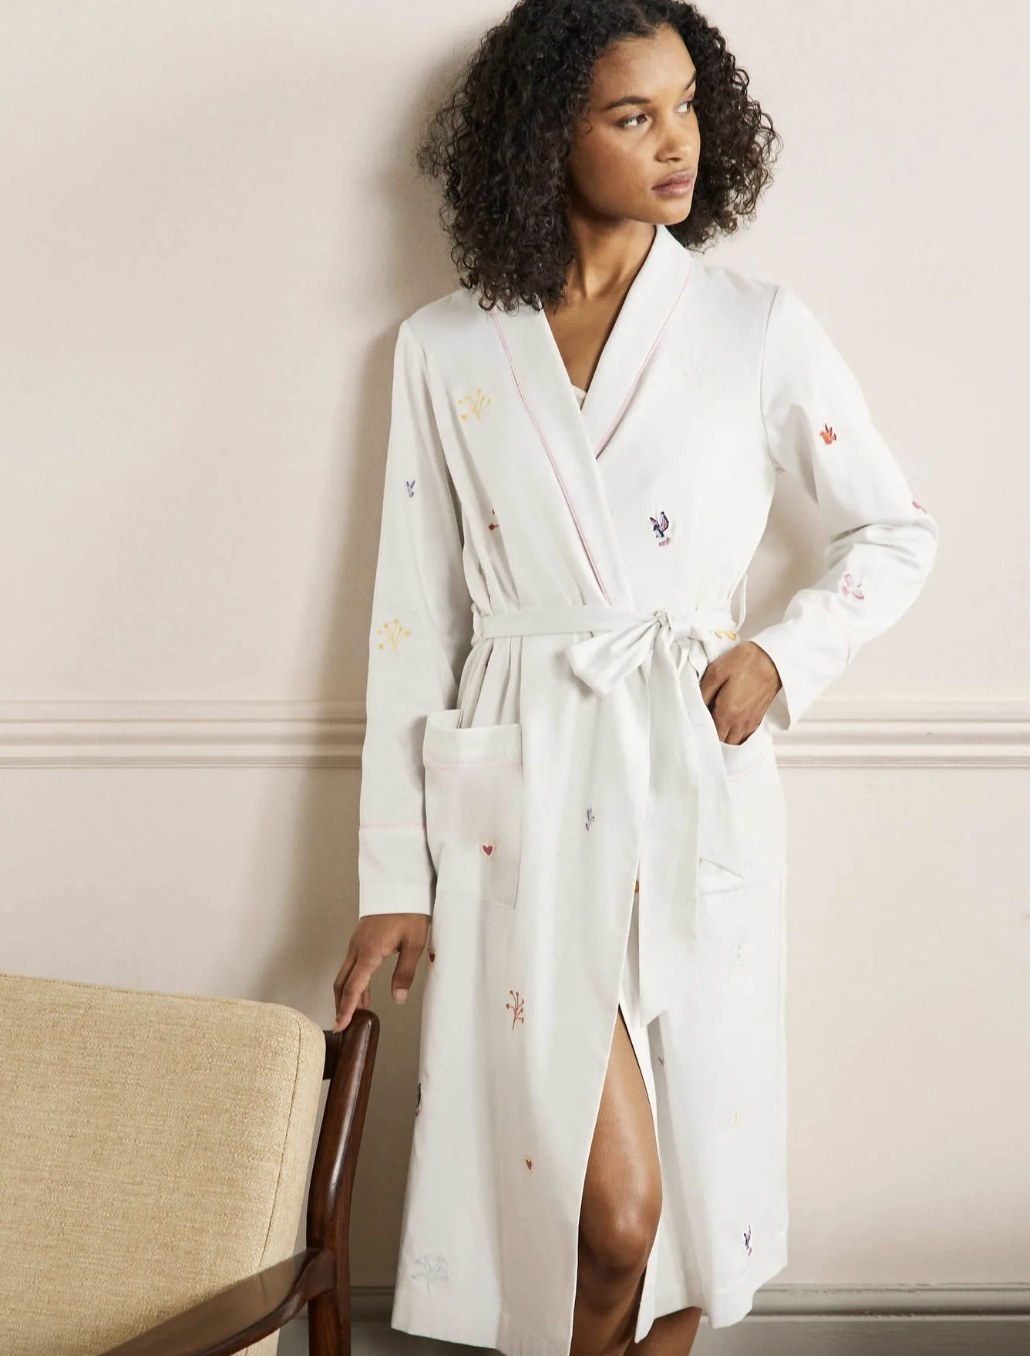 model in robe